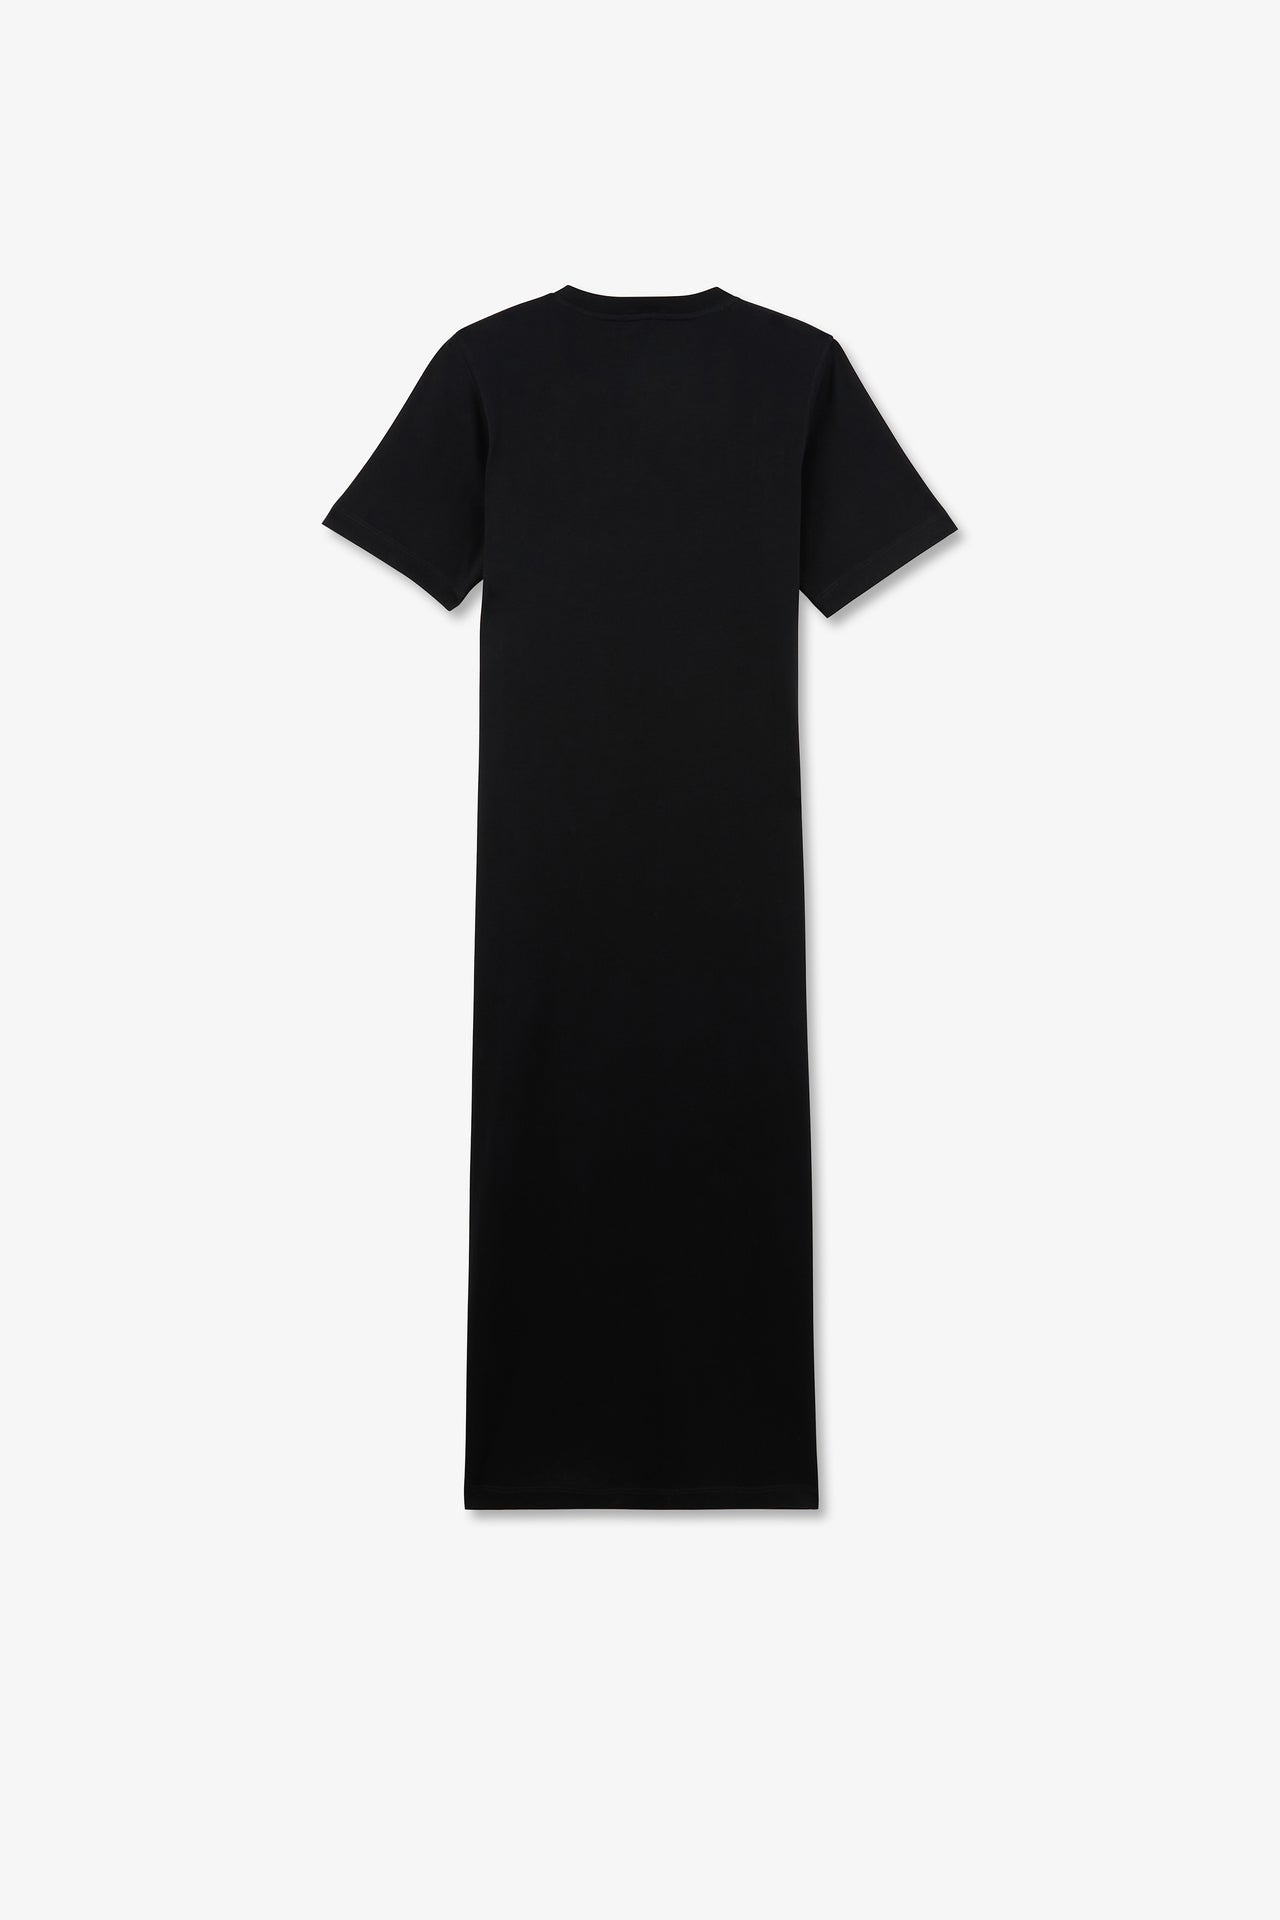 Robe T-shirt noire en coton Pima